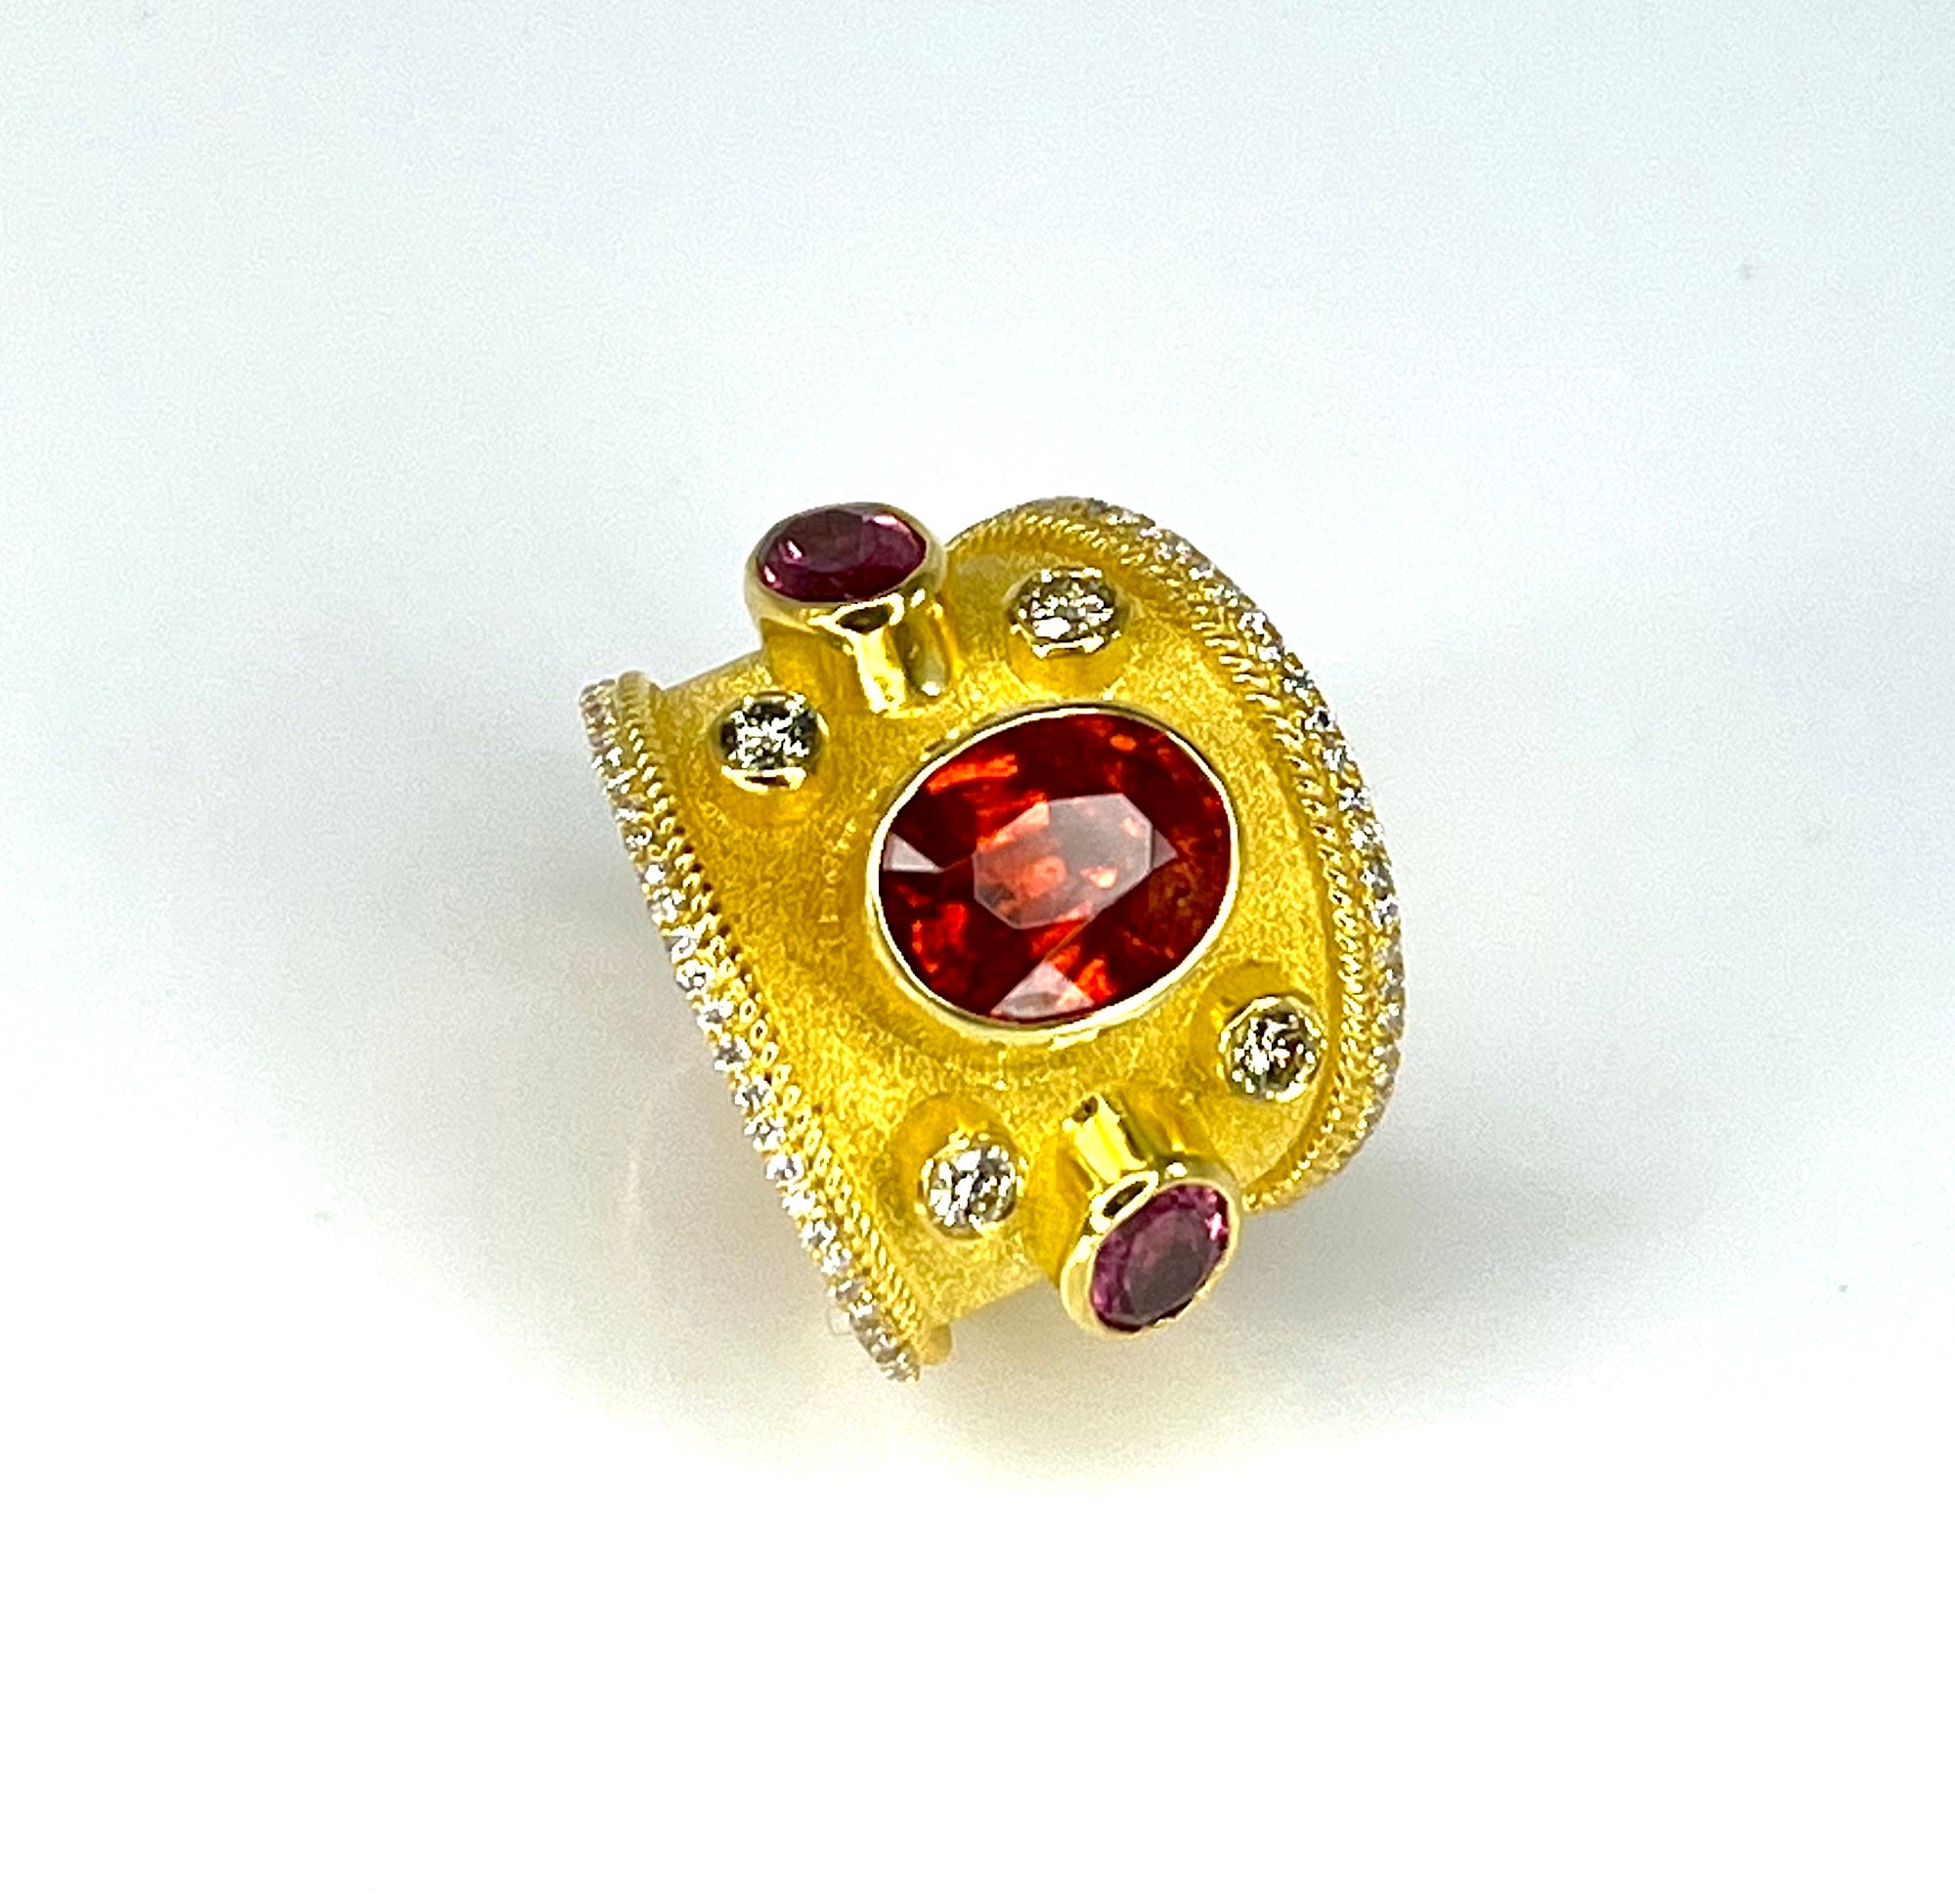 Bewundernder S.Georgios Designer 18 Karat massives Gelbgold breiter Ring alle handgefertigt im byzantinischen Stil mit einem atemberaubenden einzigartigen Samt Hintergrund und verdrehten Drähten. Dieser wunderschöne Ring hat in der Mitte einen oval